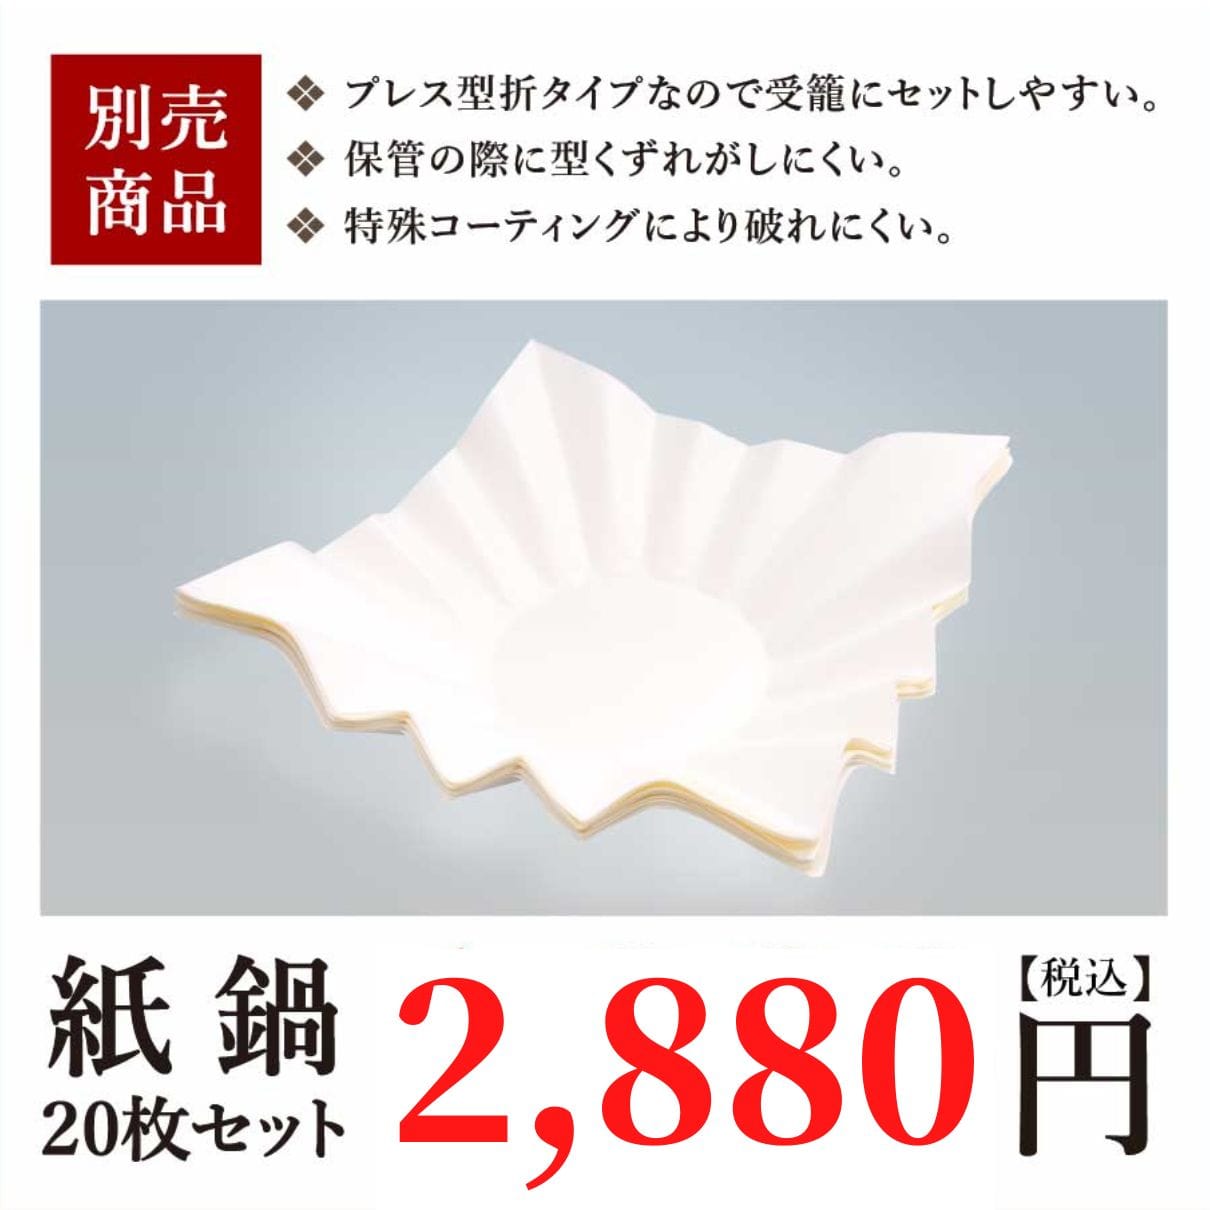 【IH専用】玄品の紙鍋セット(紙すき鍋10枚+お玉付)